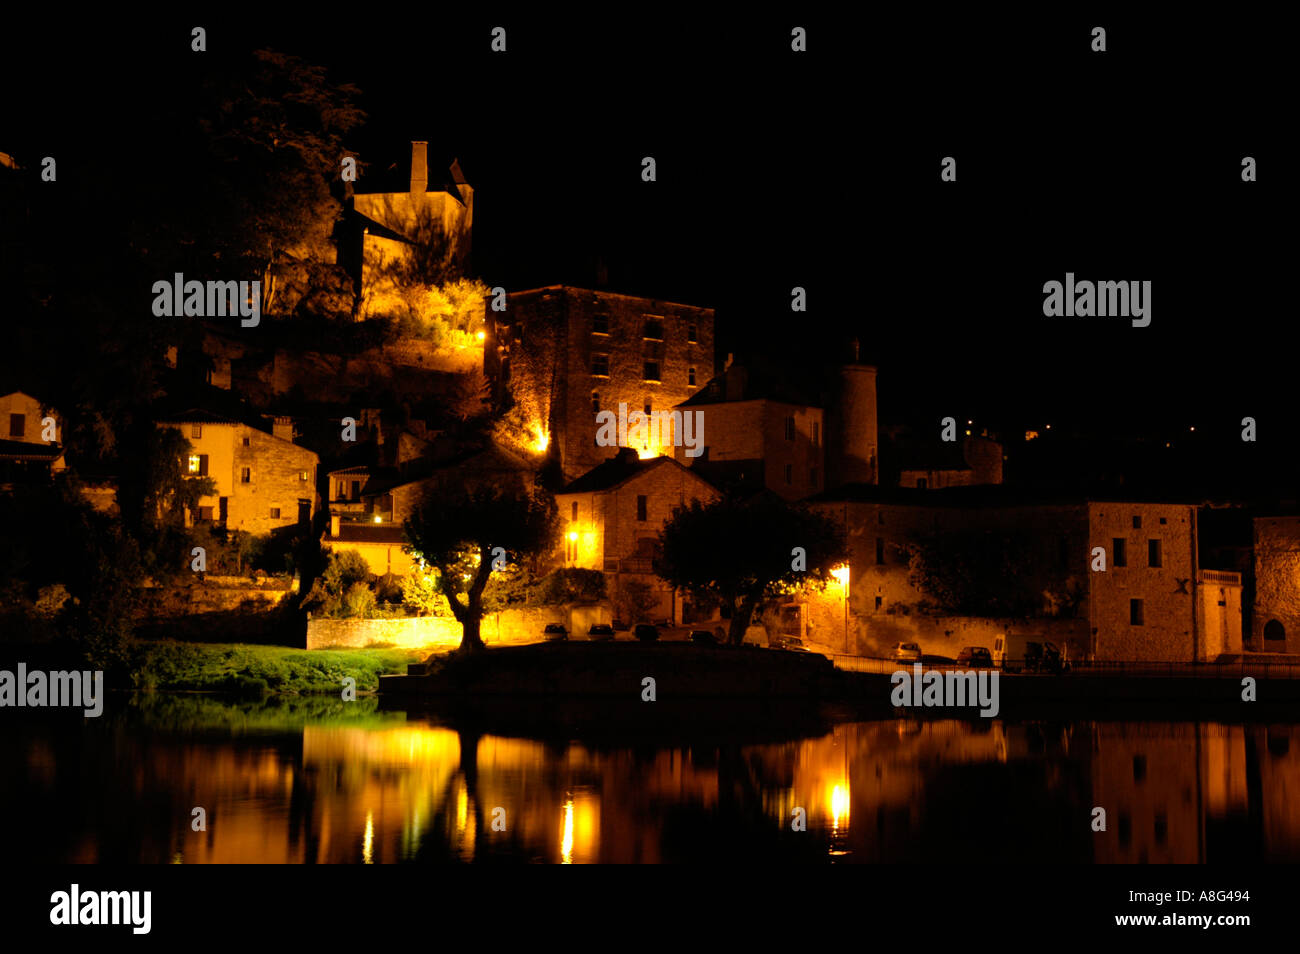 Bâtiments médiévaux illuminés de nuit à Puy l eveque Dordogne France Banque D'Images